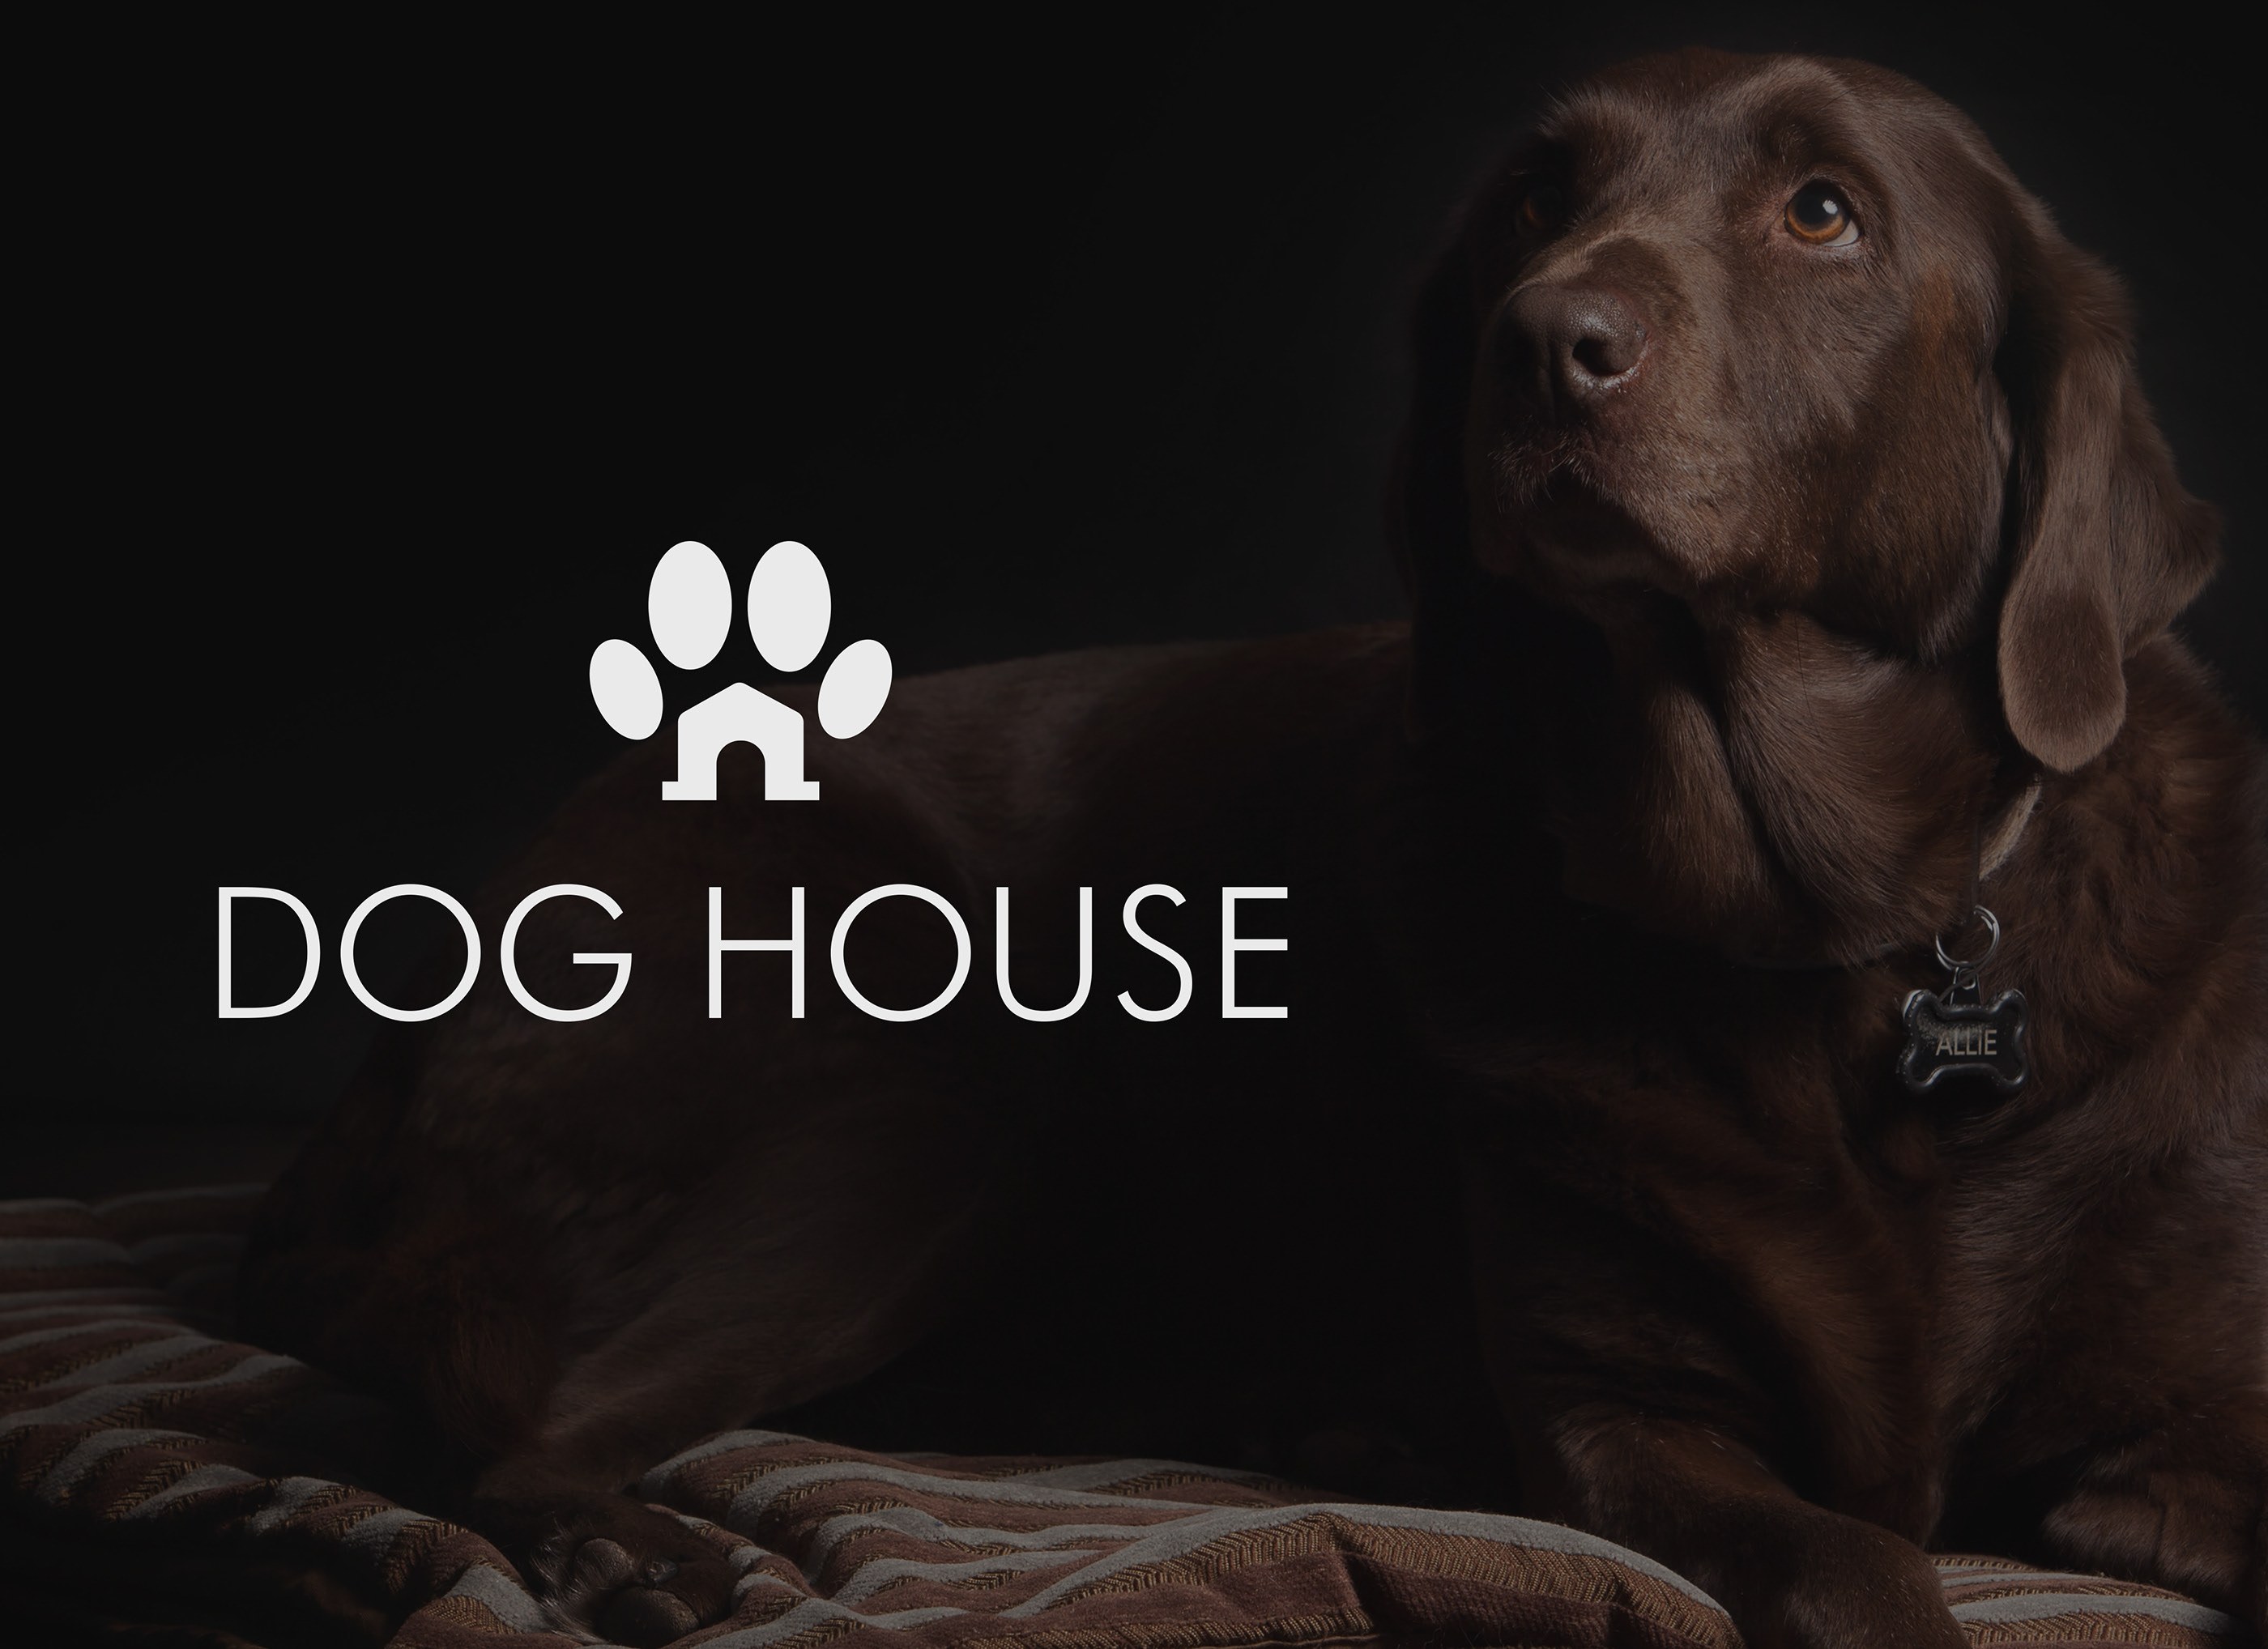 Дог хаус демо dogs house net. Хаус собак. Собака для дог хауса. Дог Хаус аватарка. Авы для хауса собак.